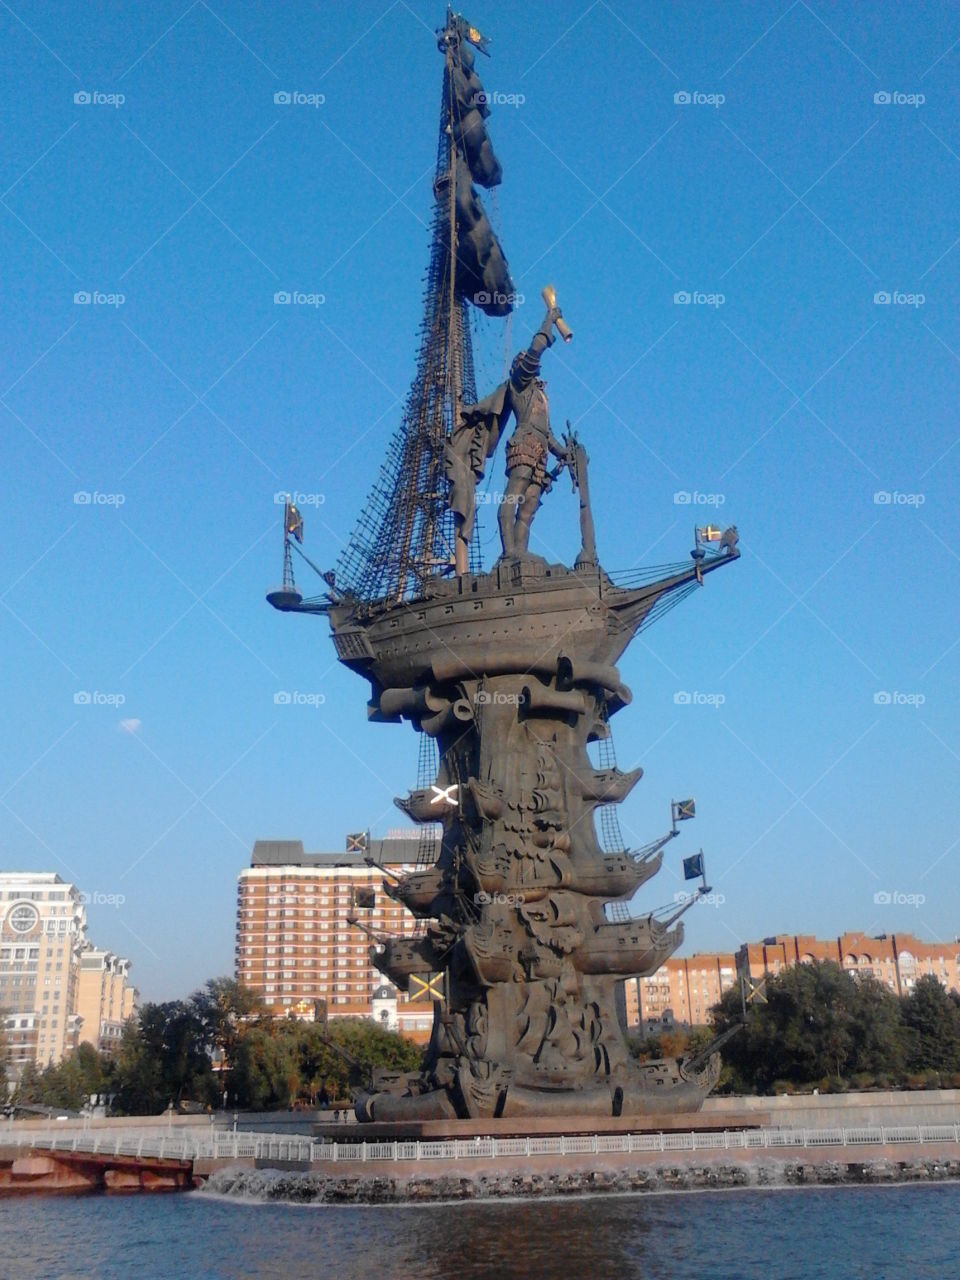 Памятник Петру первому,установлен на стрелке Москвы-реки,одна из высочайших скульптур в мире, установлен в 1997 году.